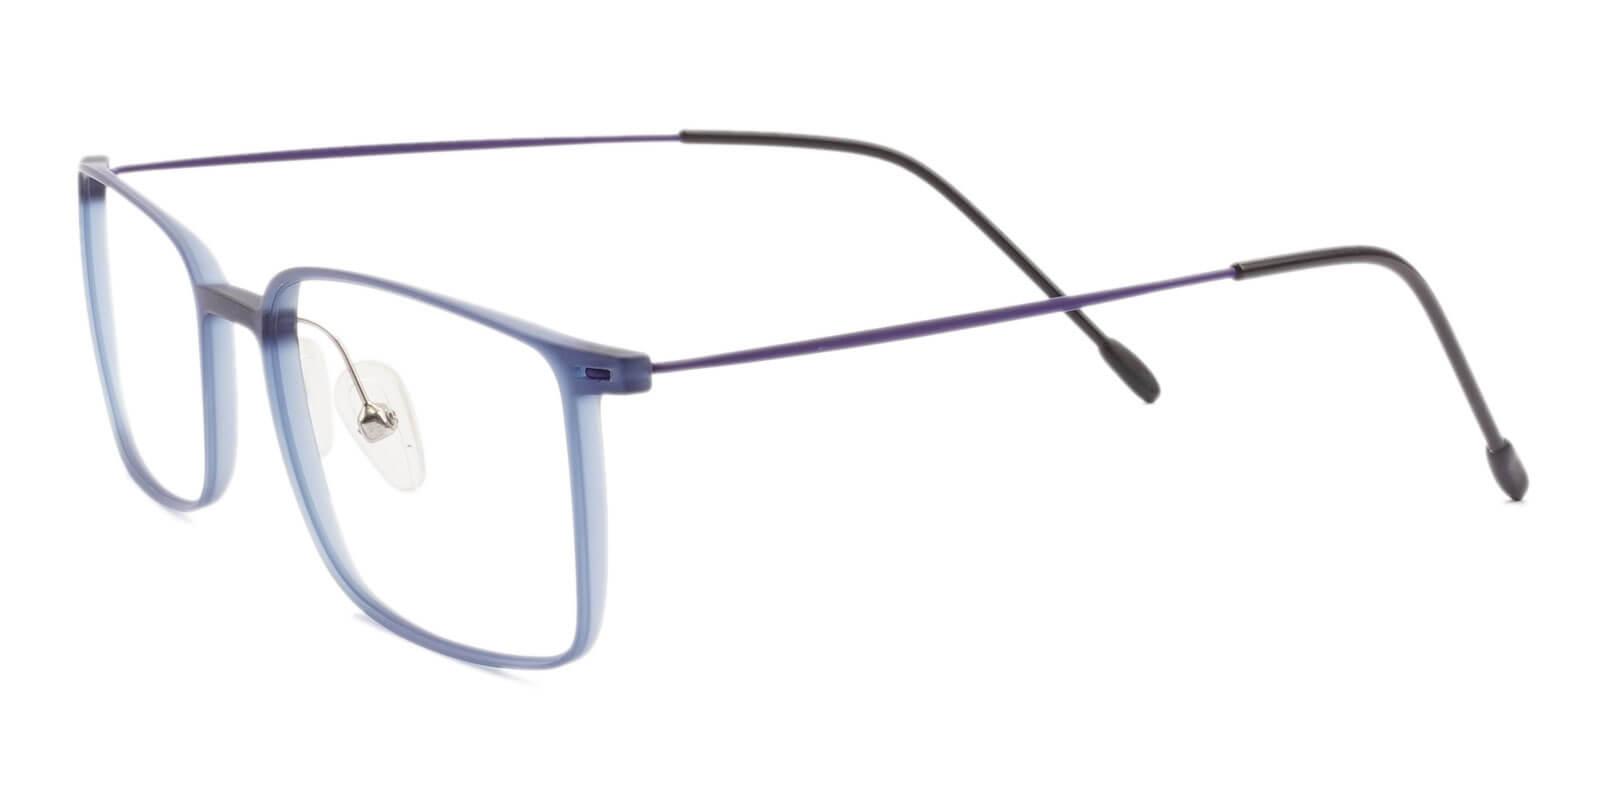 Philadelphia Blue Combination Eyeglasses , Lightweight , NosePads Frames from ABBE Glasses